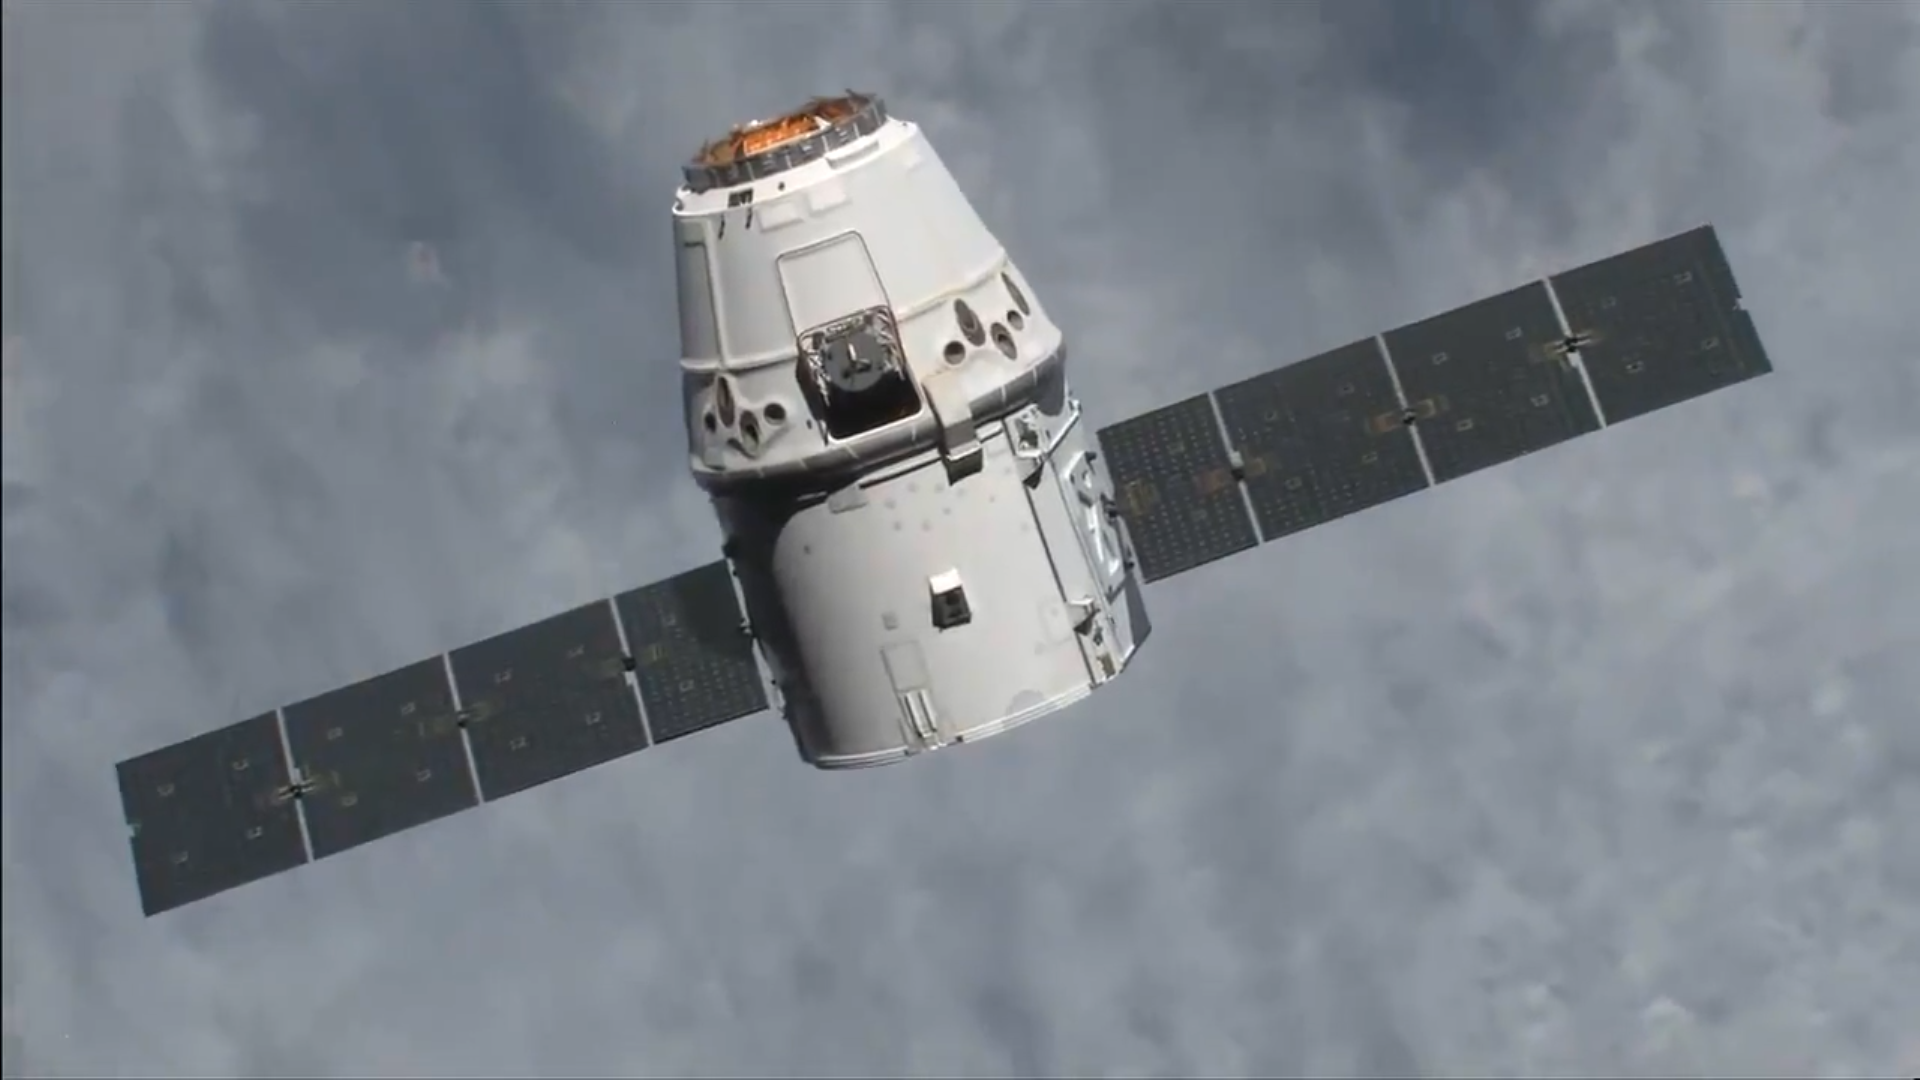 SpaceX last kapsel Dragon hell tilbake til jorden mus og annen last